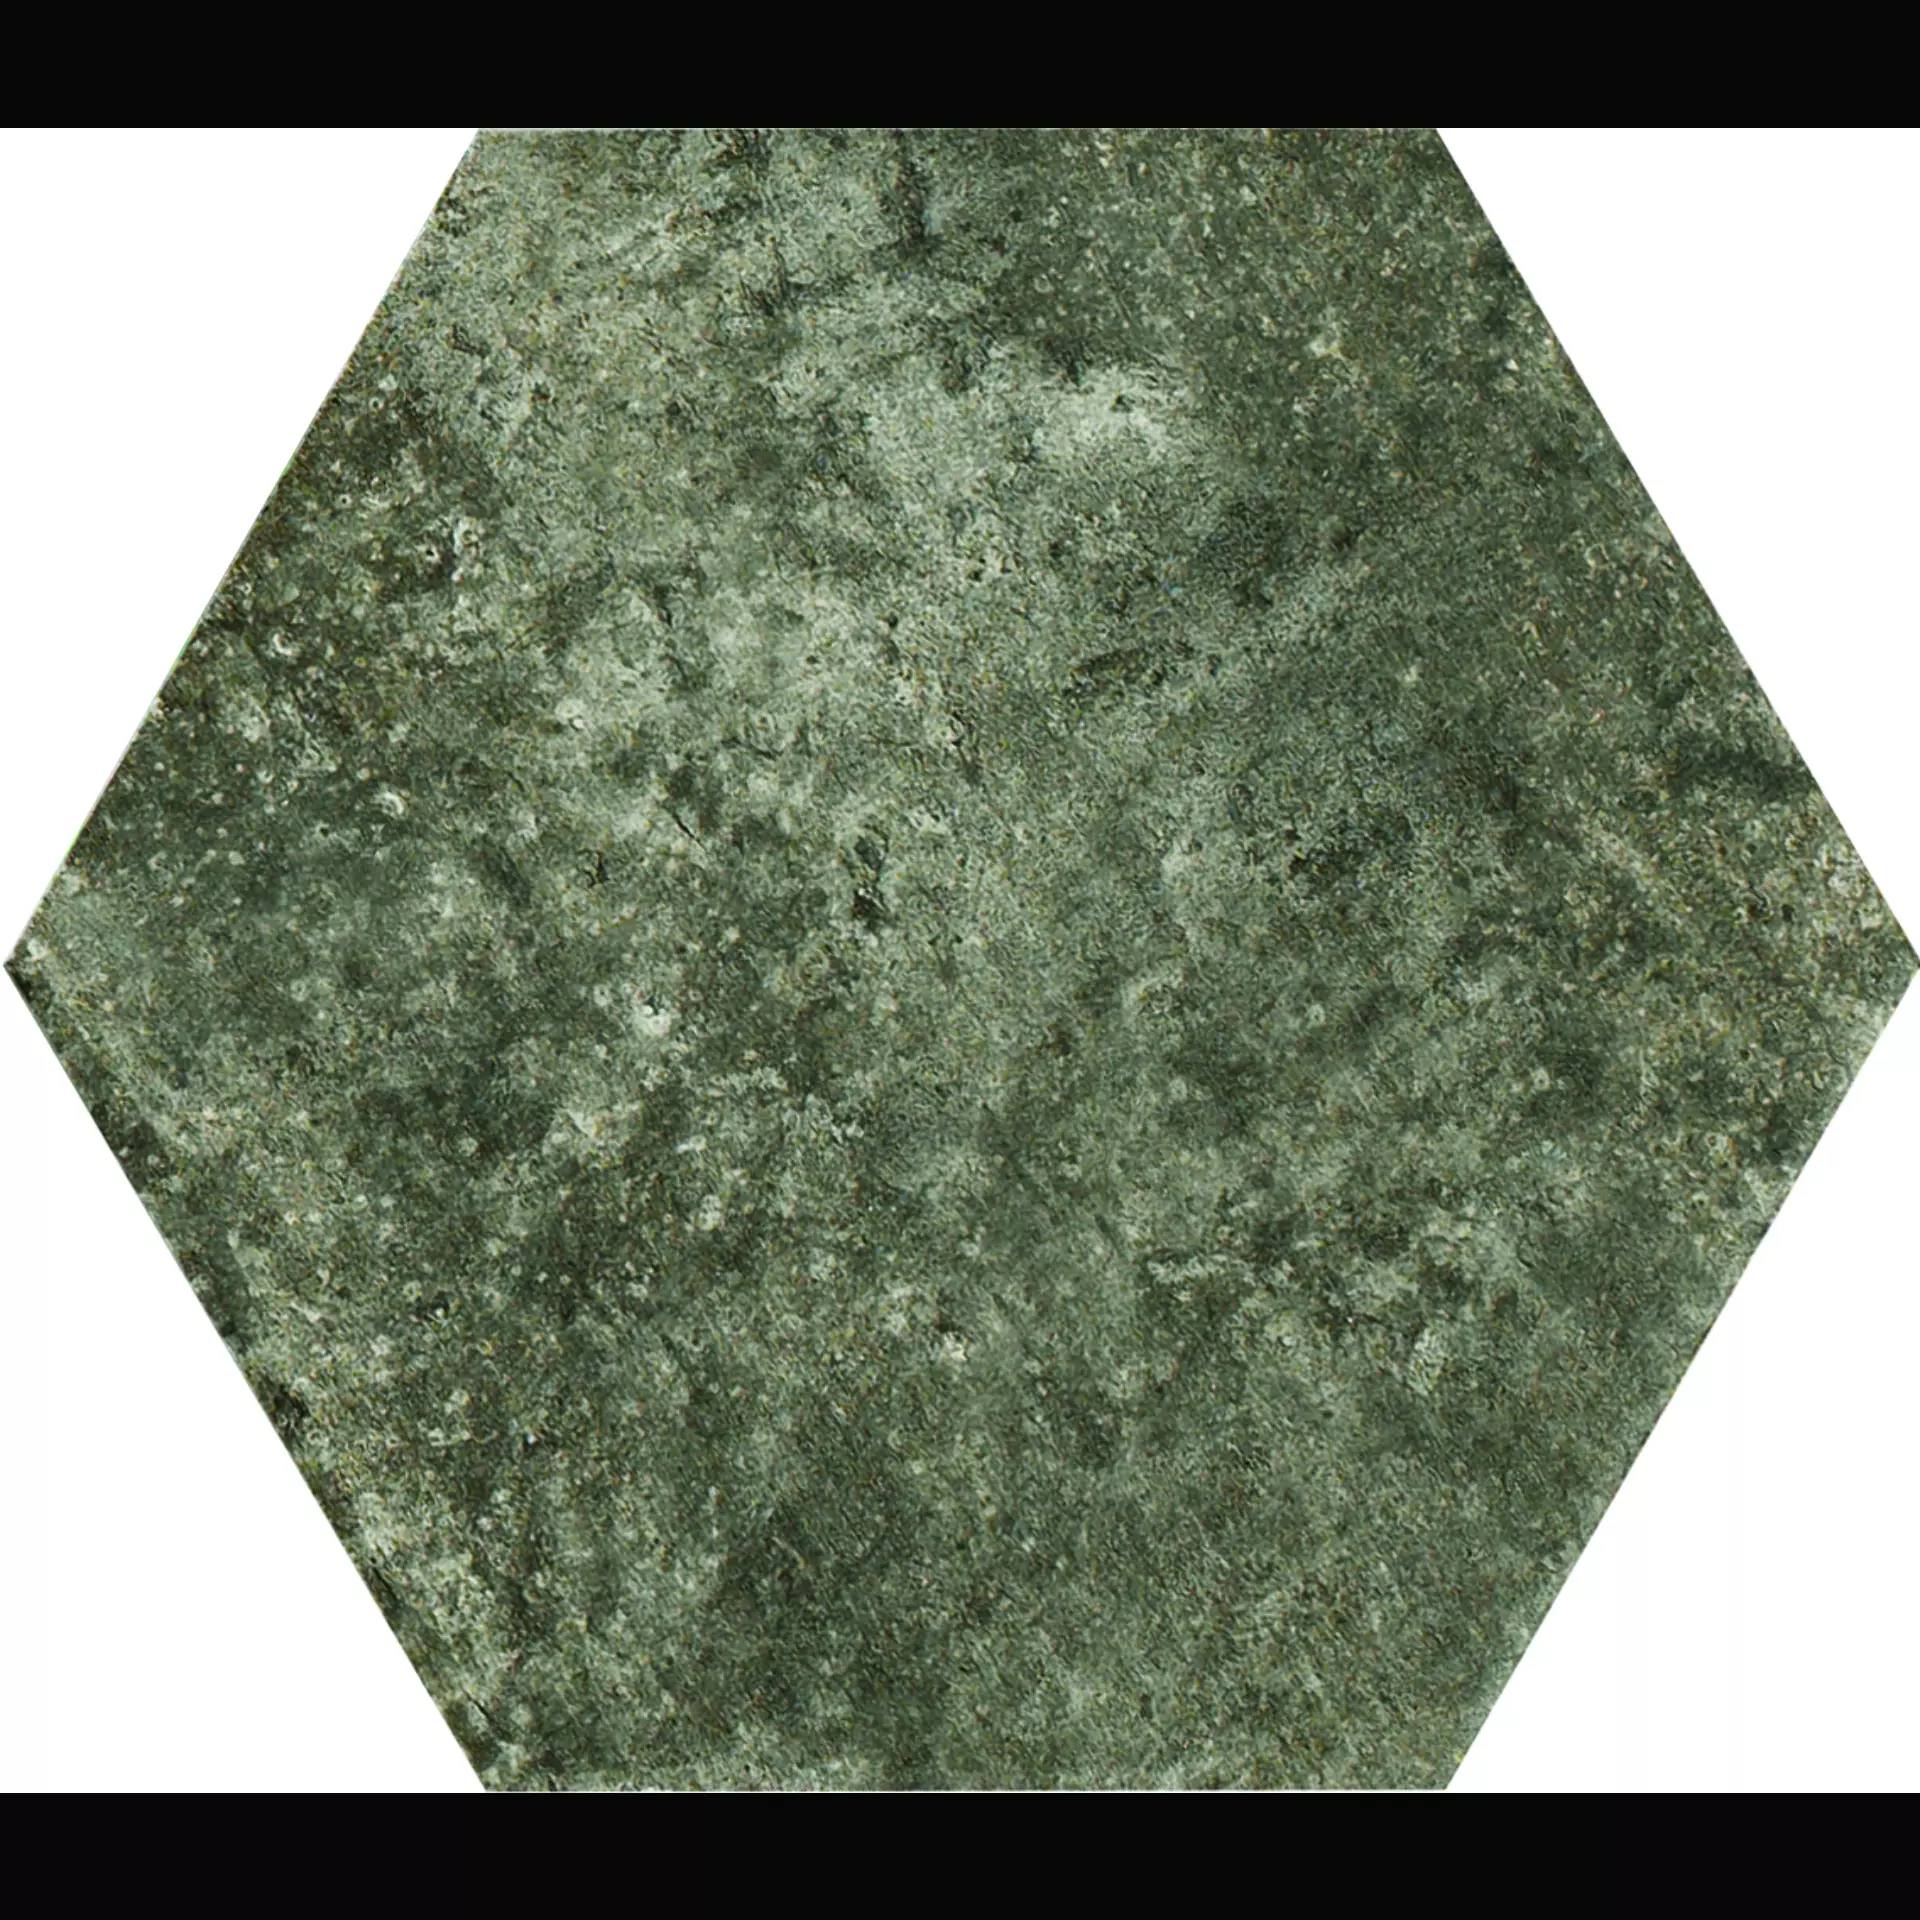 CIR New York Wall Street Naturale Hexagon 1048418 24x27,7cm